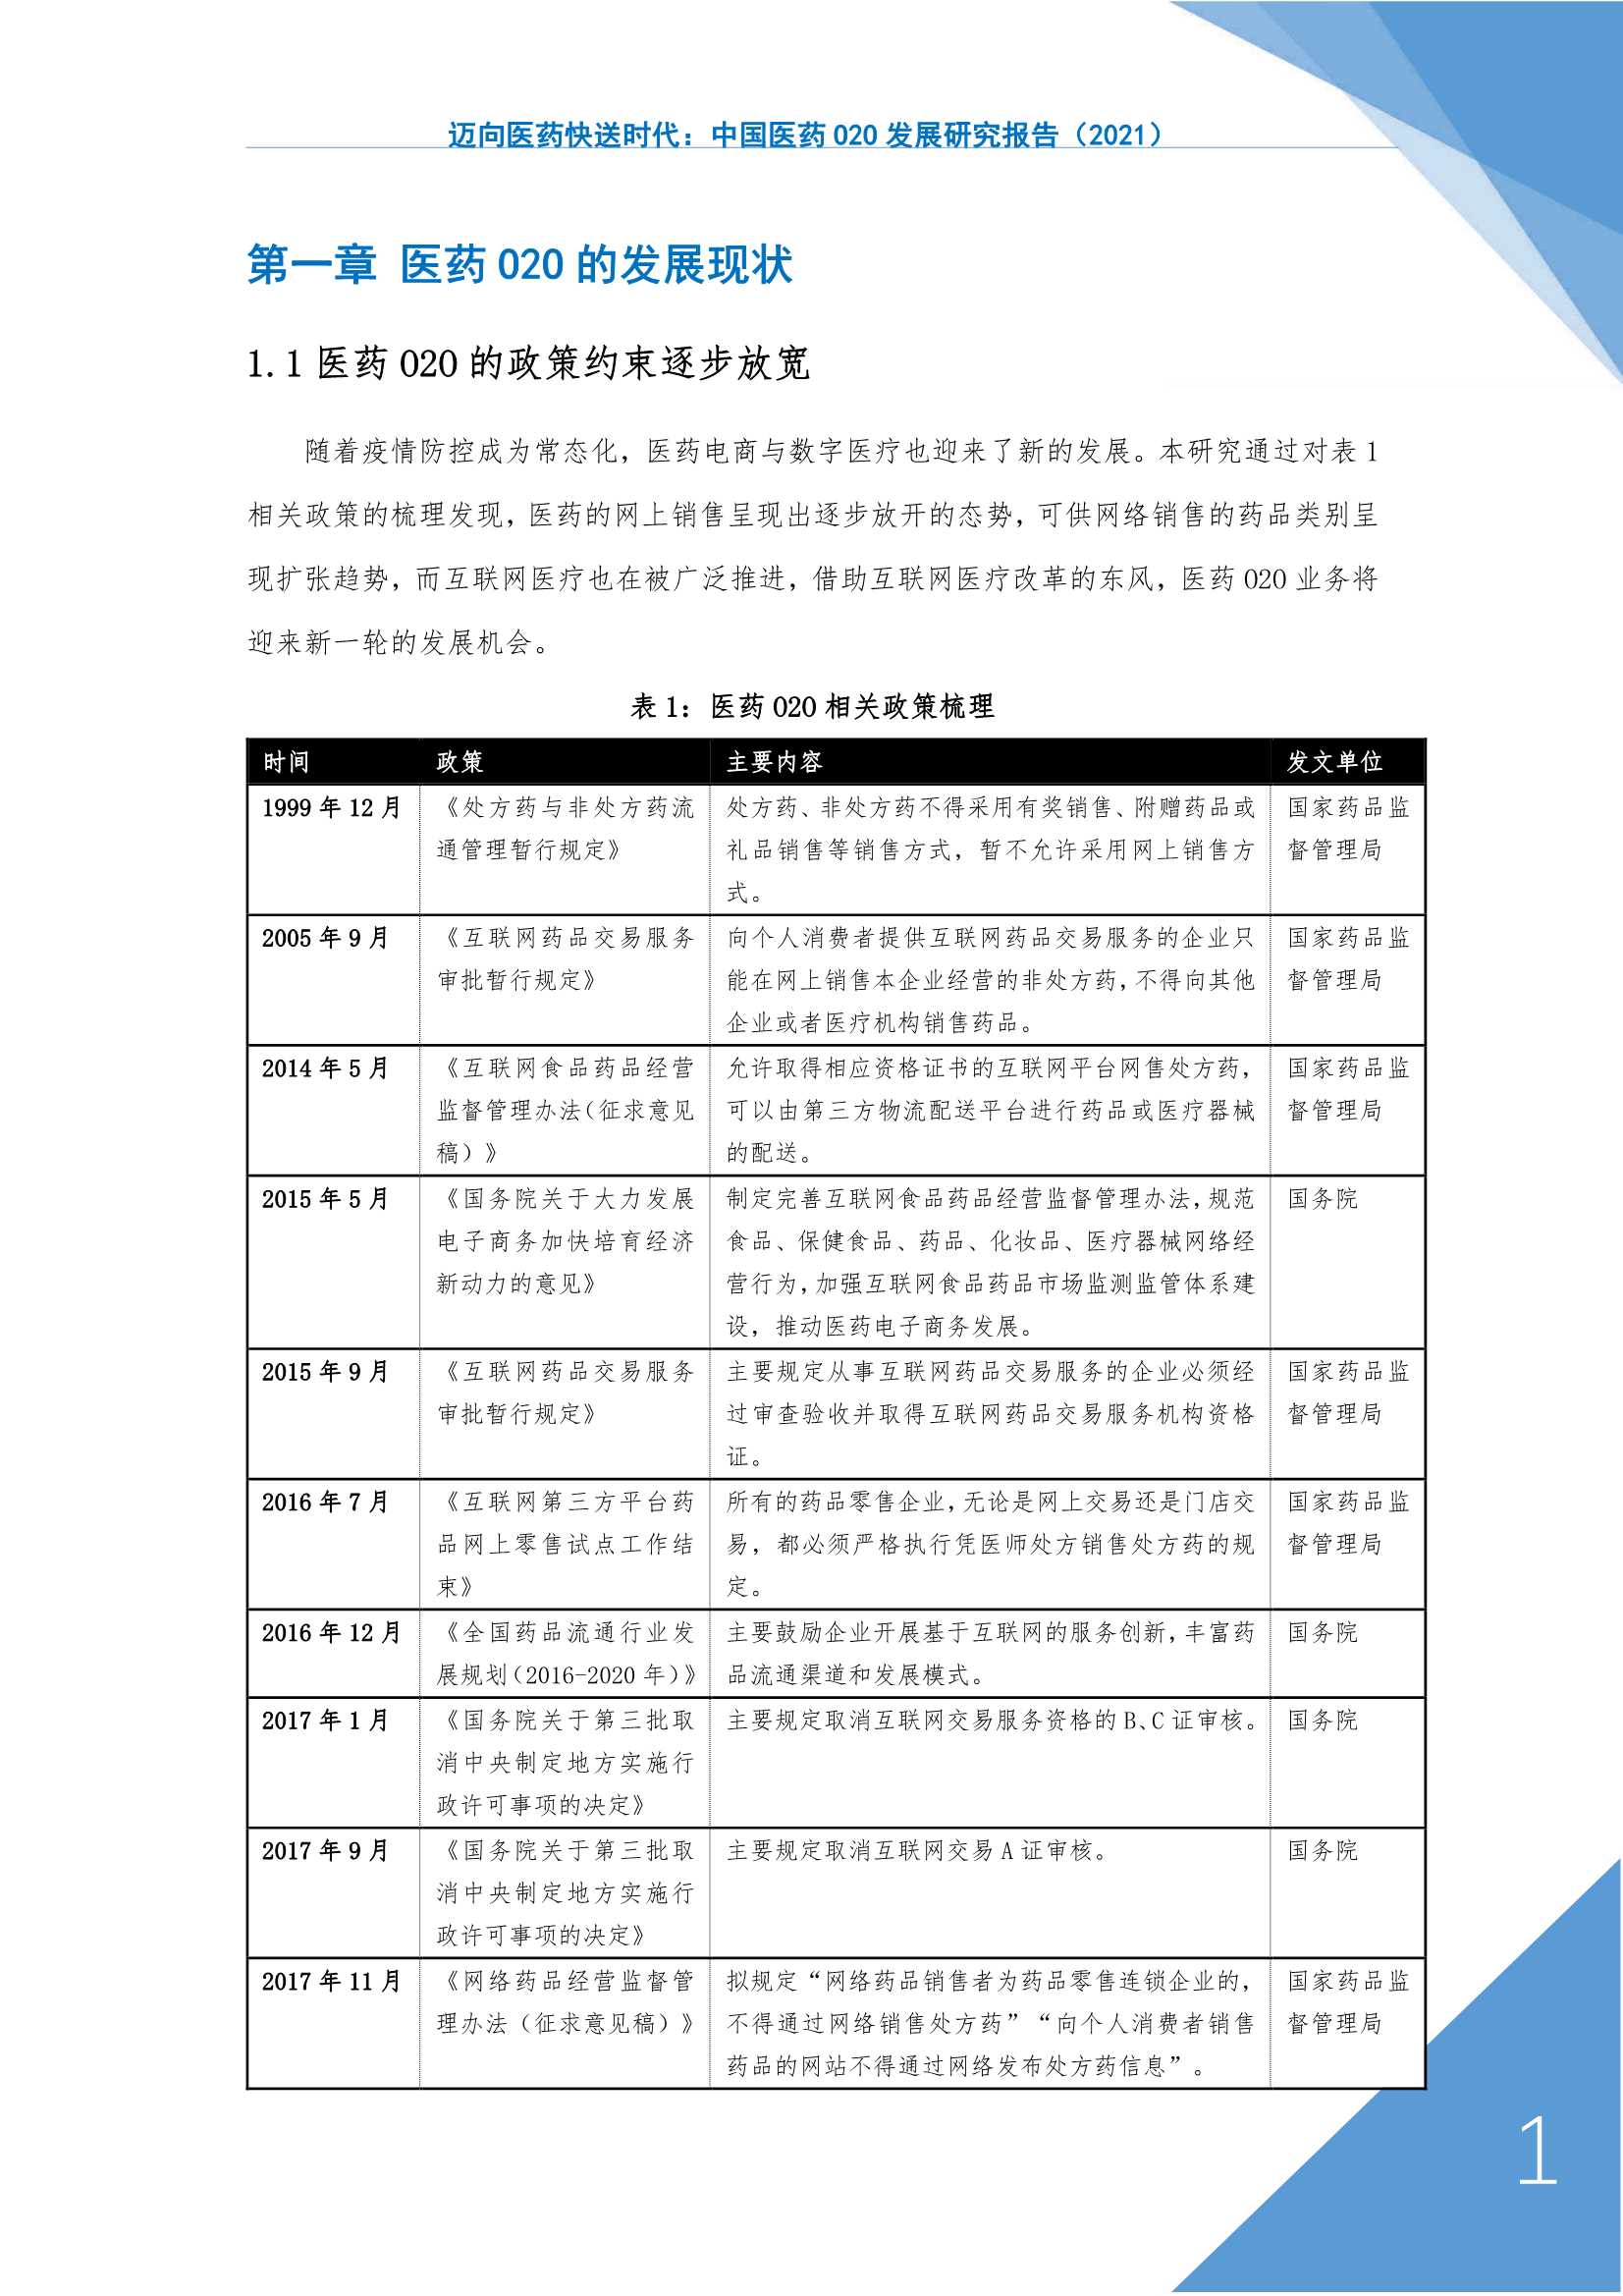 上海大学管理学院-中国医药O2O发展研究报告，2021迈向医药快送时代-2022.01-36页